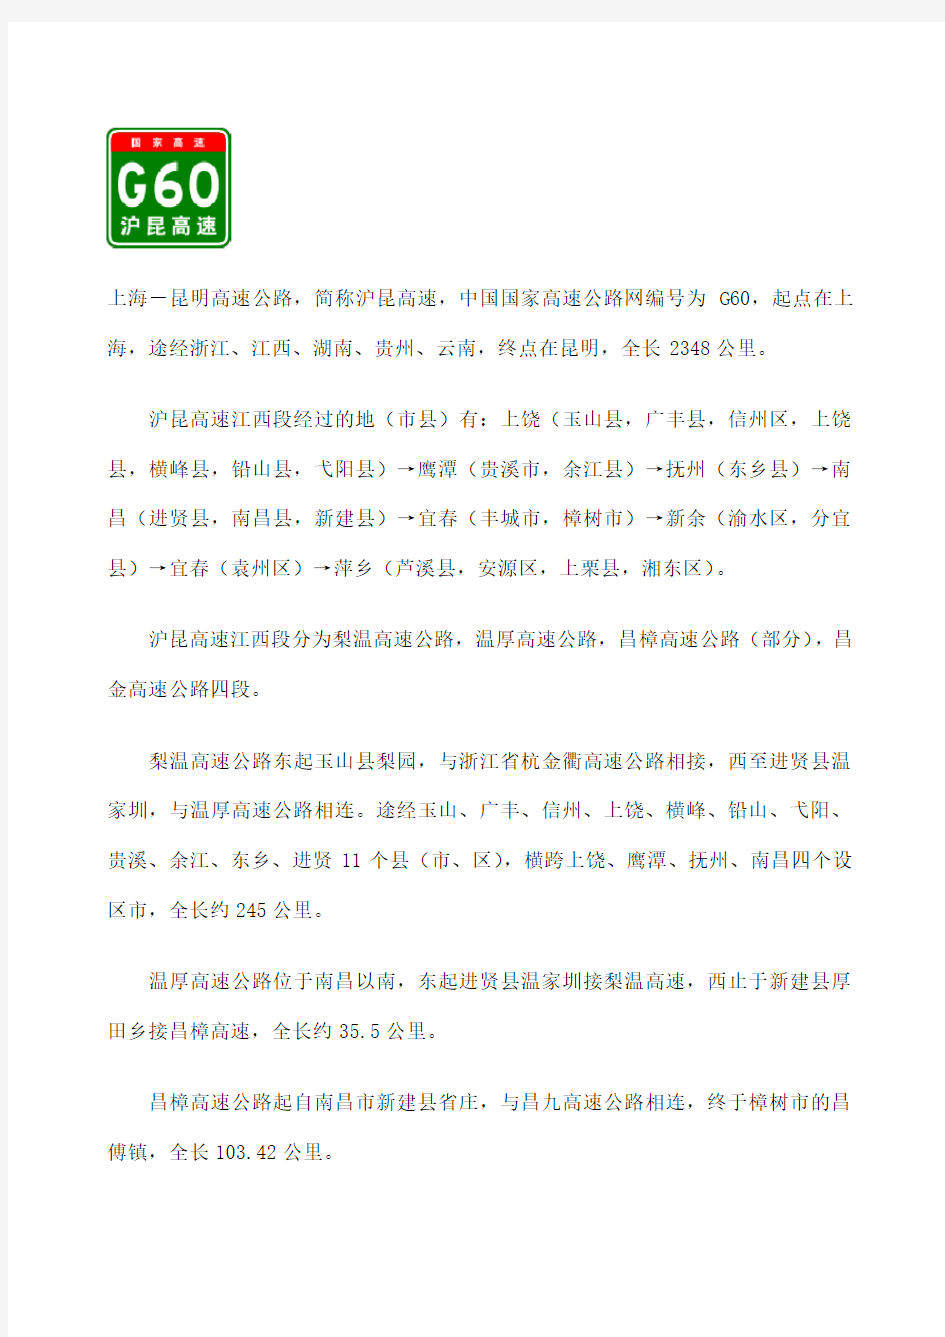 G沪昆高速江西段出入口服务区里程数及风景区